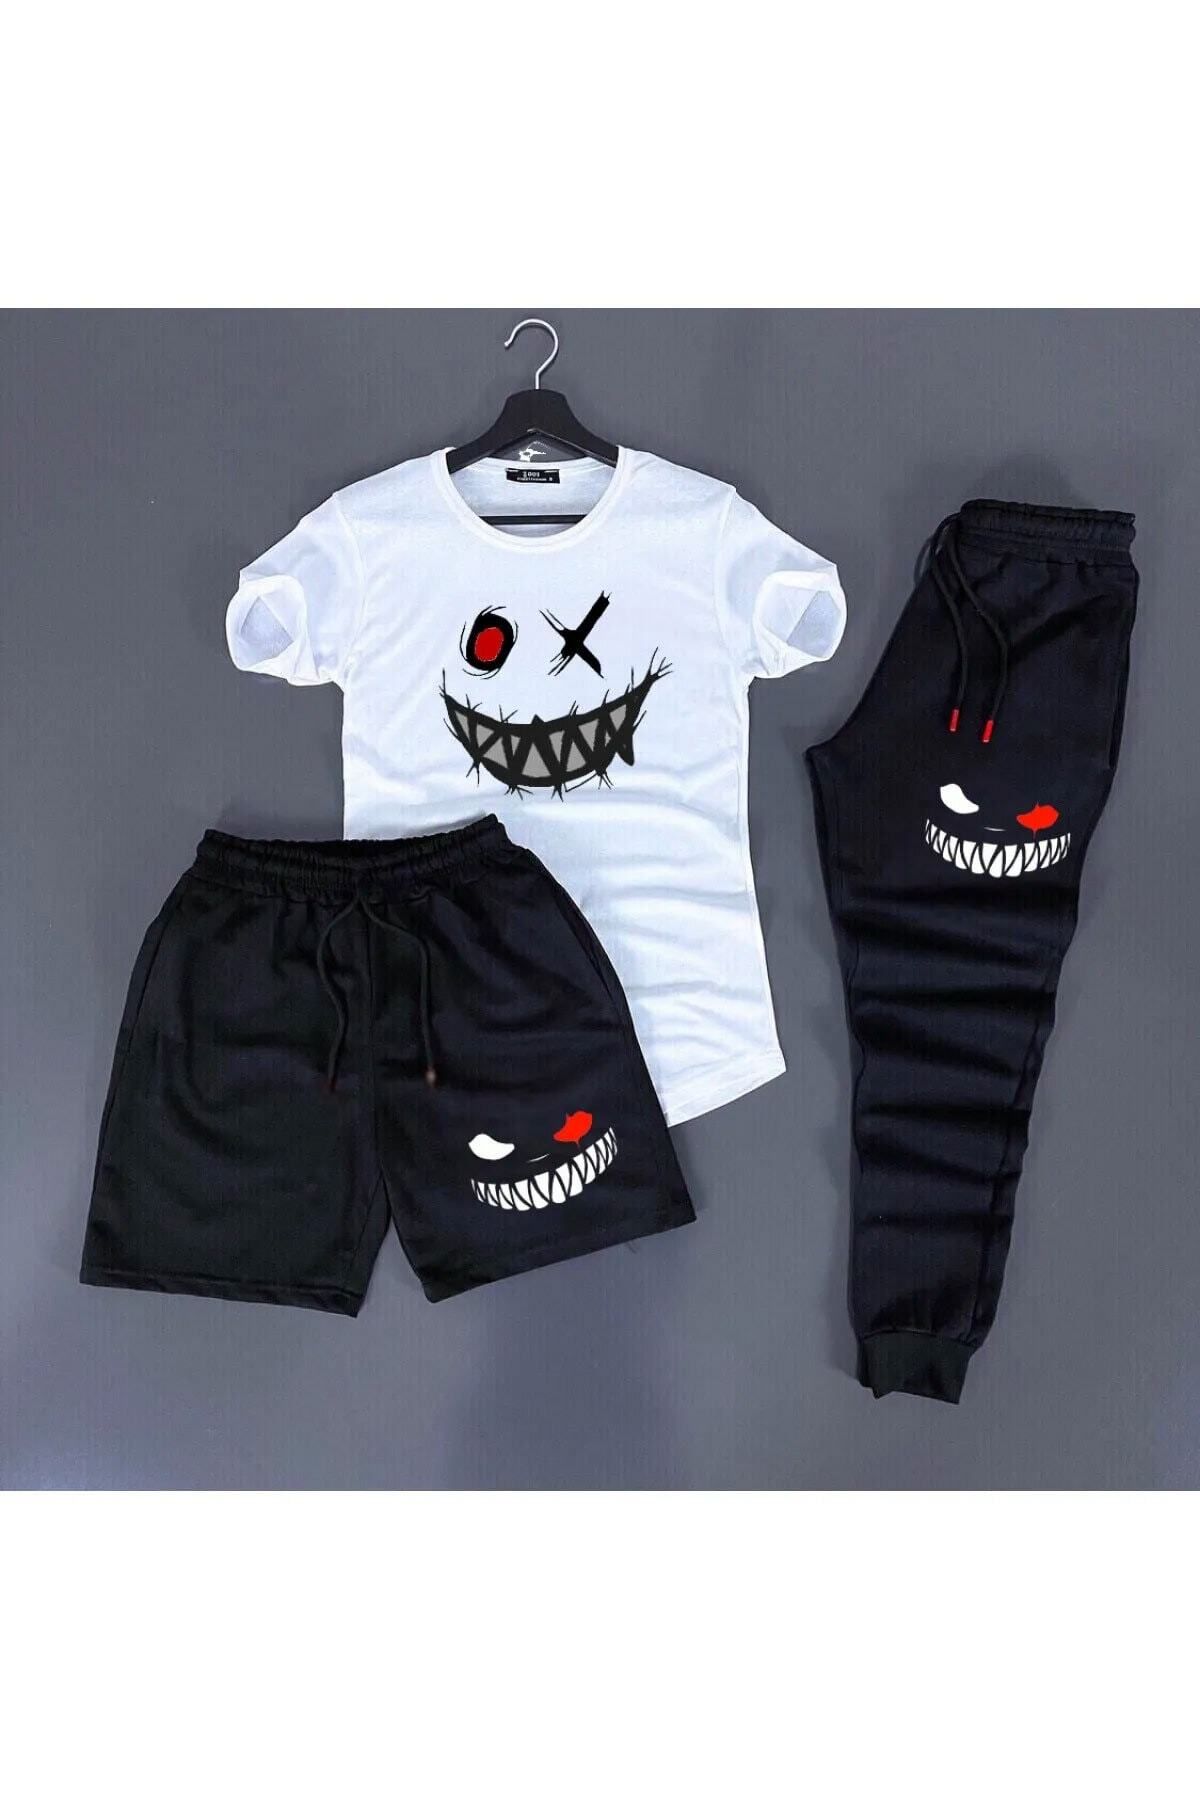 Hunors Sportswear & Company 3'lü Unisex Kombin Smile Baskılı T-shirt, Şort Ve Eşorfman Kombin